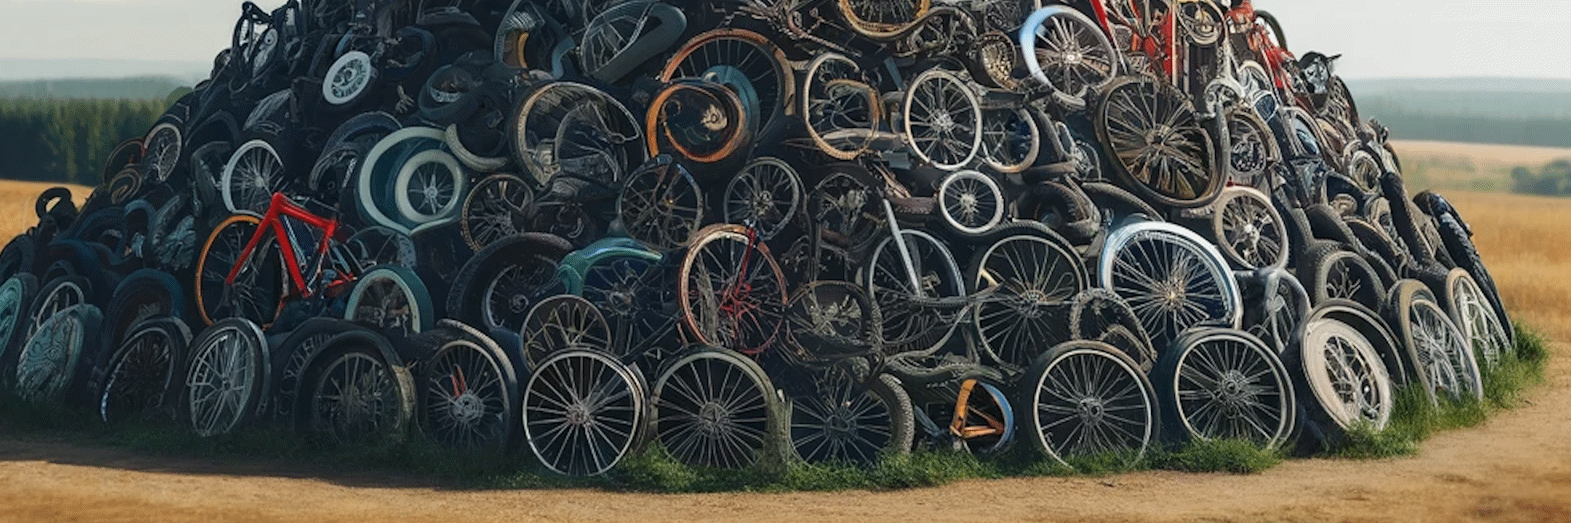 Vælg den rigtige størrelse cykeldæk | Guide fra Alex Cykler